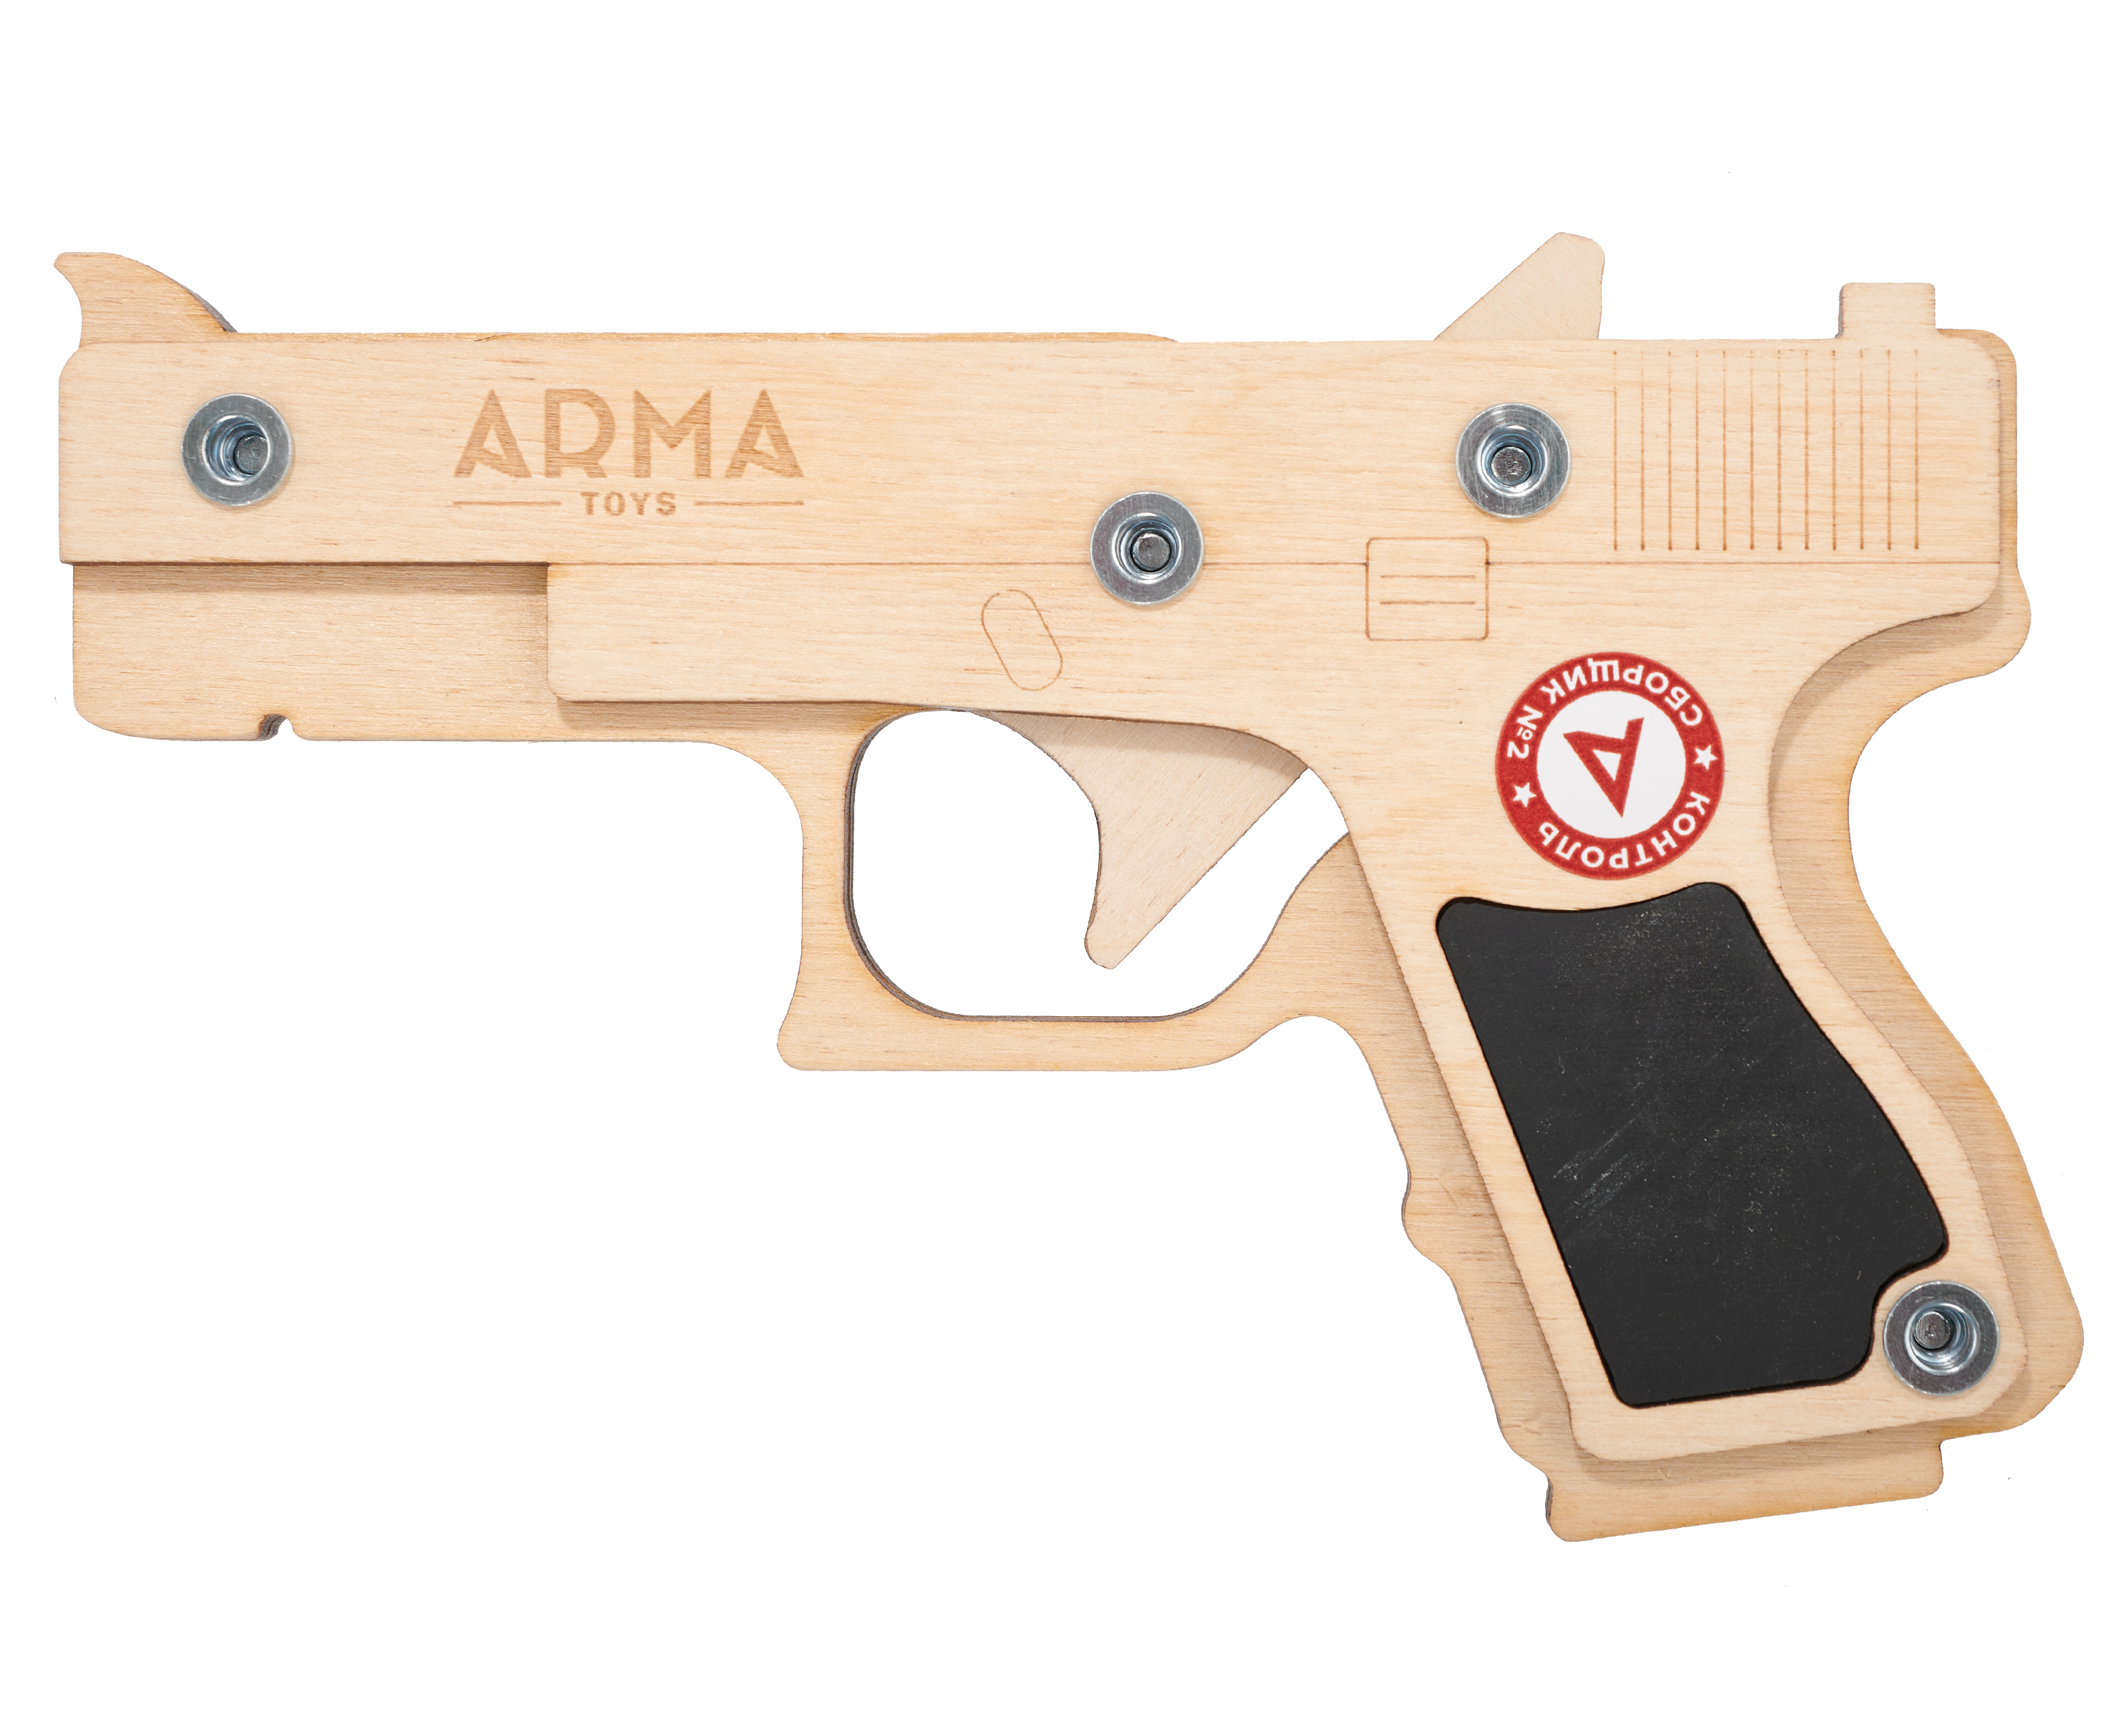 Резинкострел игрушечный Arma toys пистолет Glock макет, Compact, ATL001 резинкострел игрушечный arma toys пистолет люгер макет luger parabellum p08 at024k